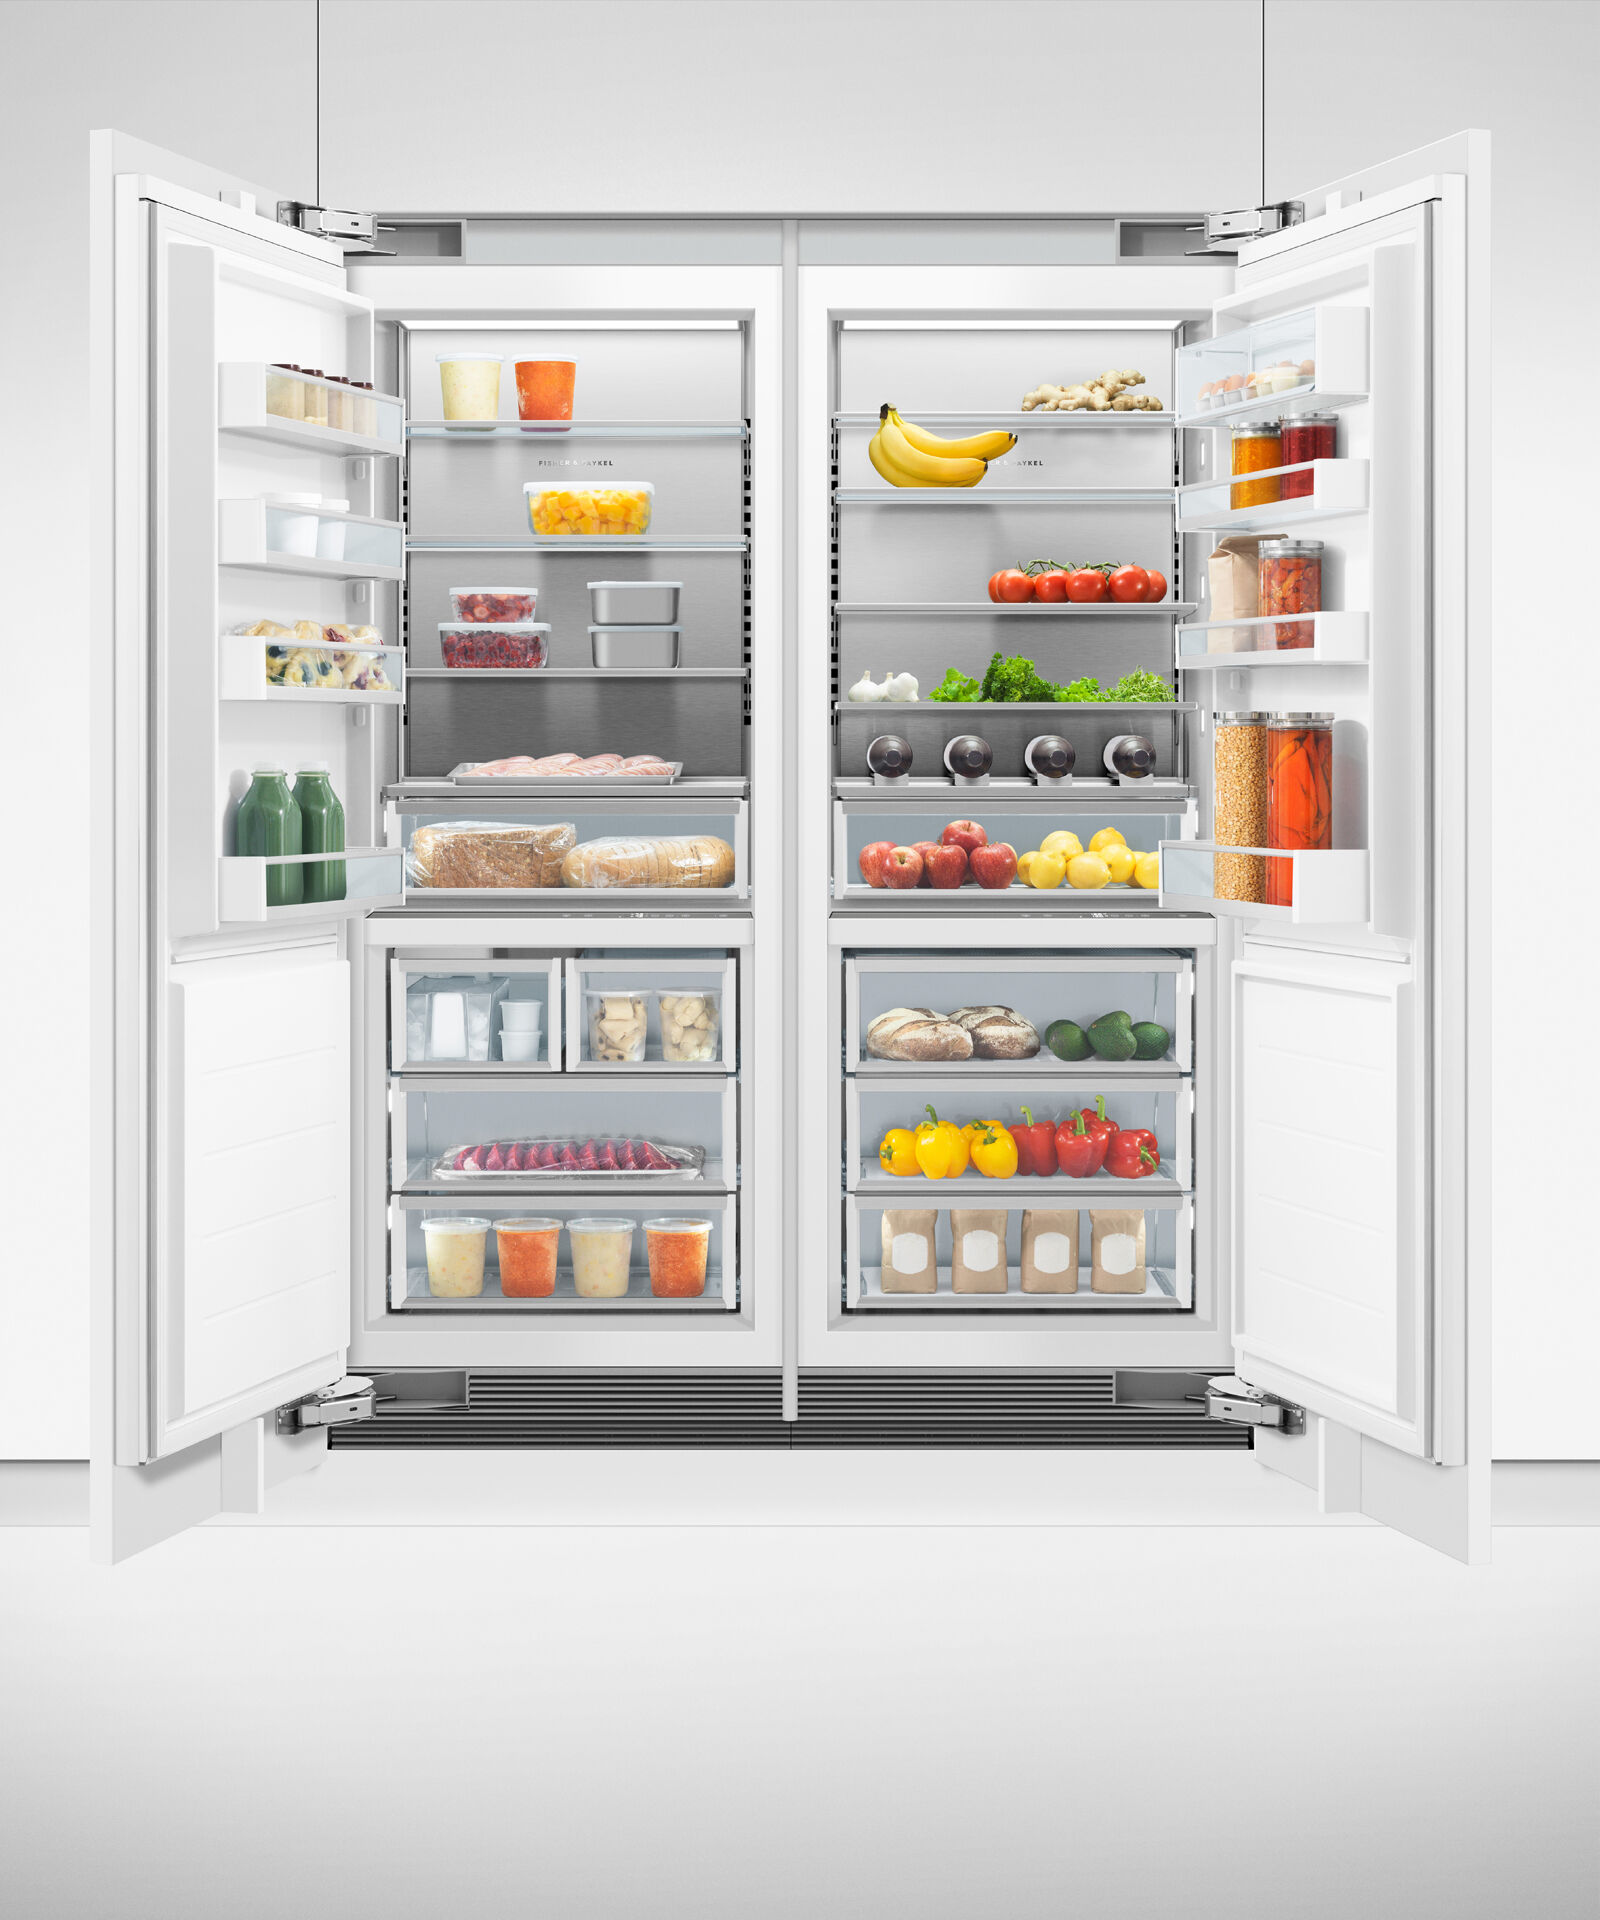 嵌入式立式冷凍櫃, 76cm, 自動製冰 gallery image 17.0